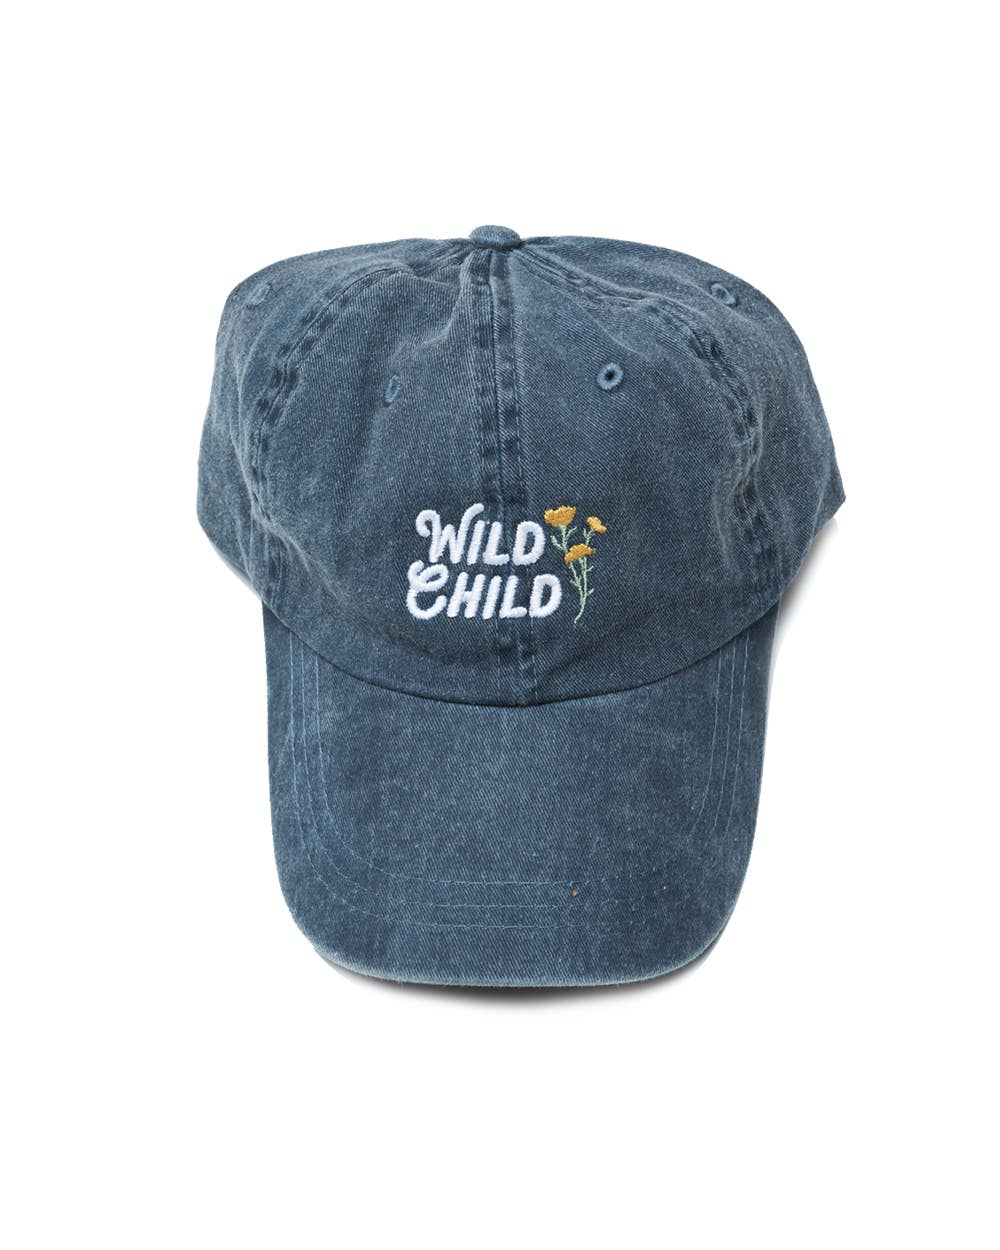 Wild Child Dad Hat - Faded Navy